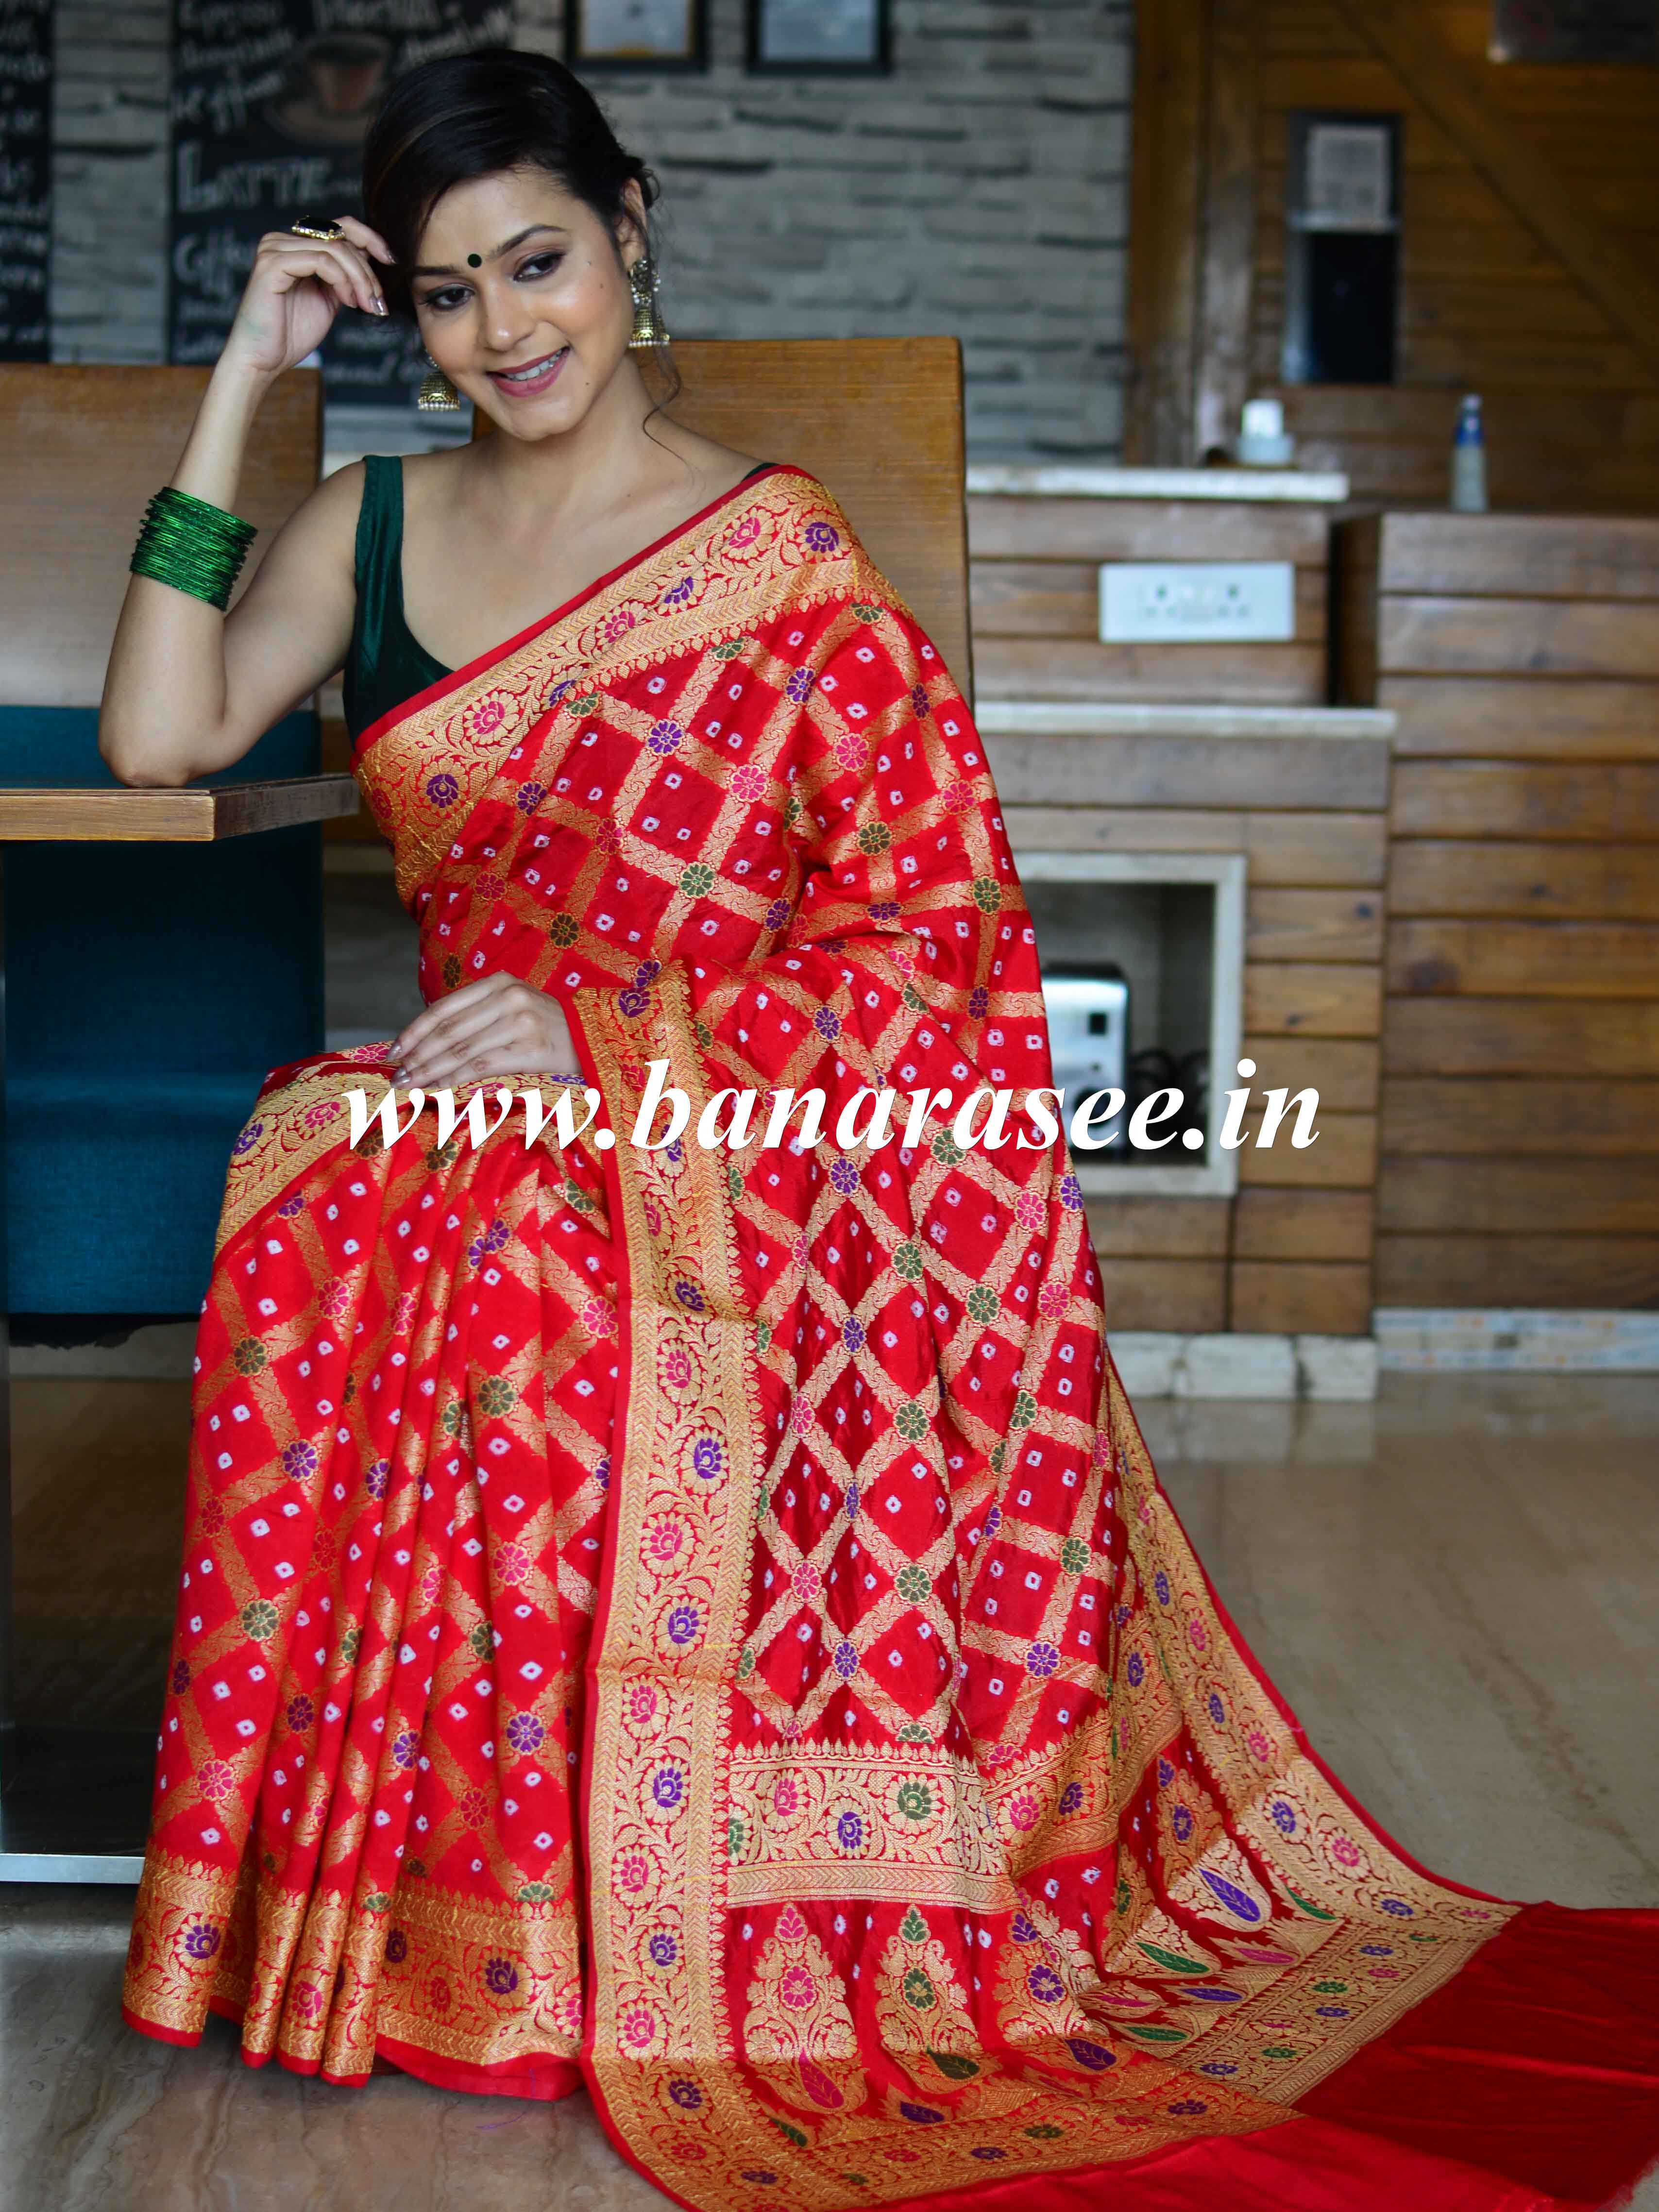 Banarasee Handwoven Semi-Chiffon Saree With Bandhej & Floral Border-Red